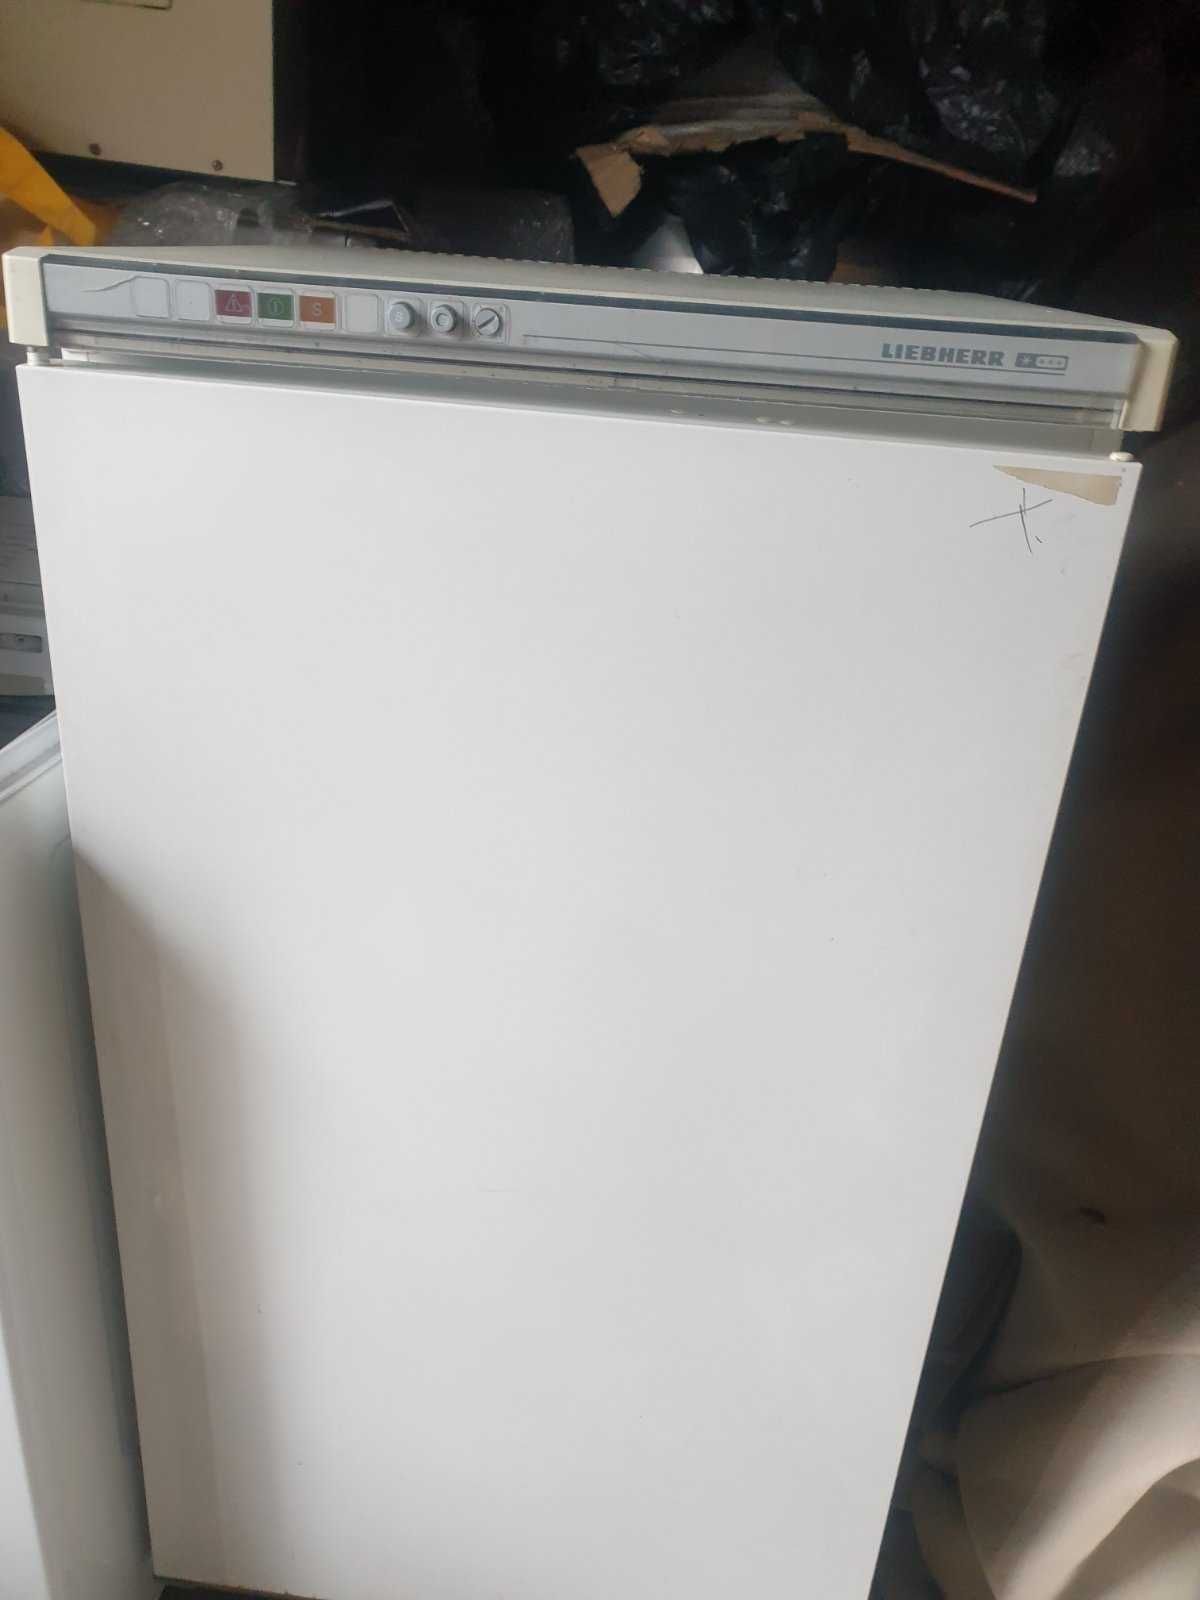 Холодильна камера на 5 ящиків LIEBHERR frost  Німеччина